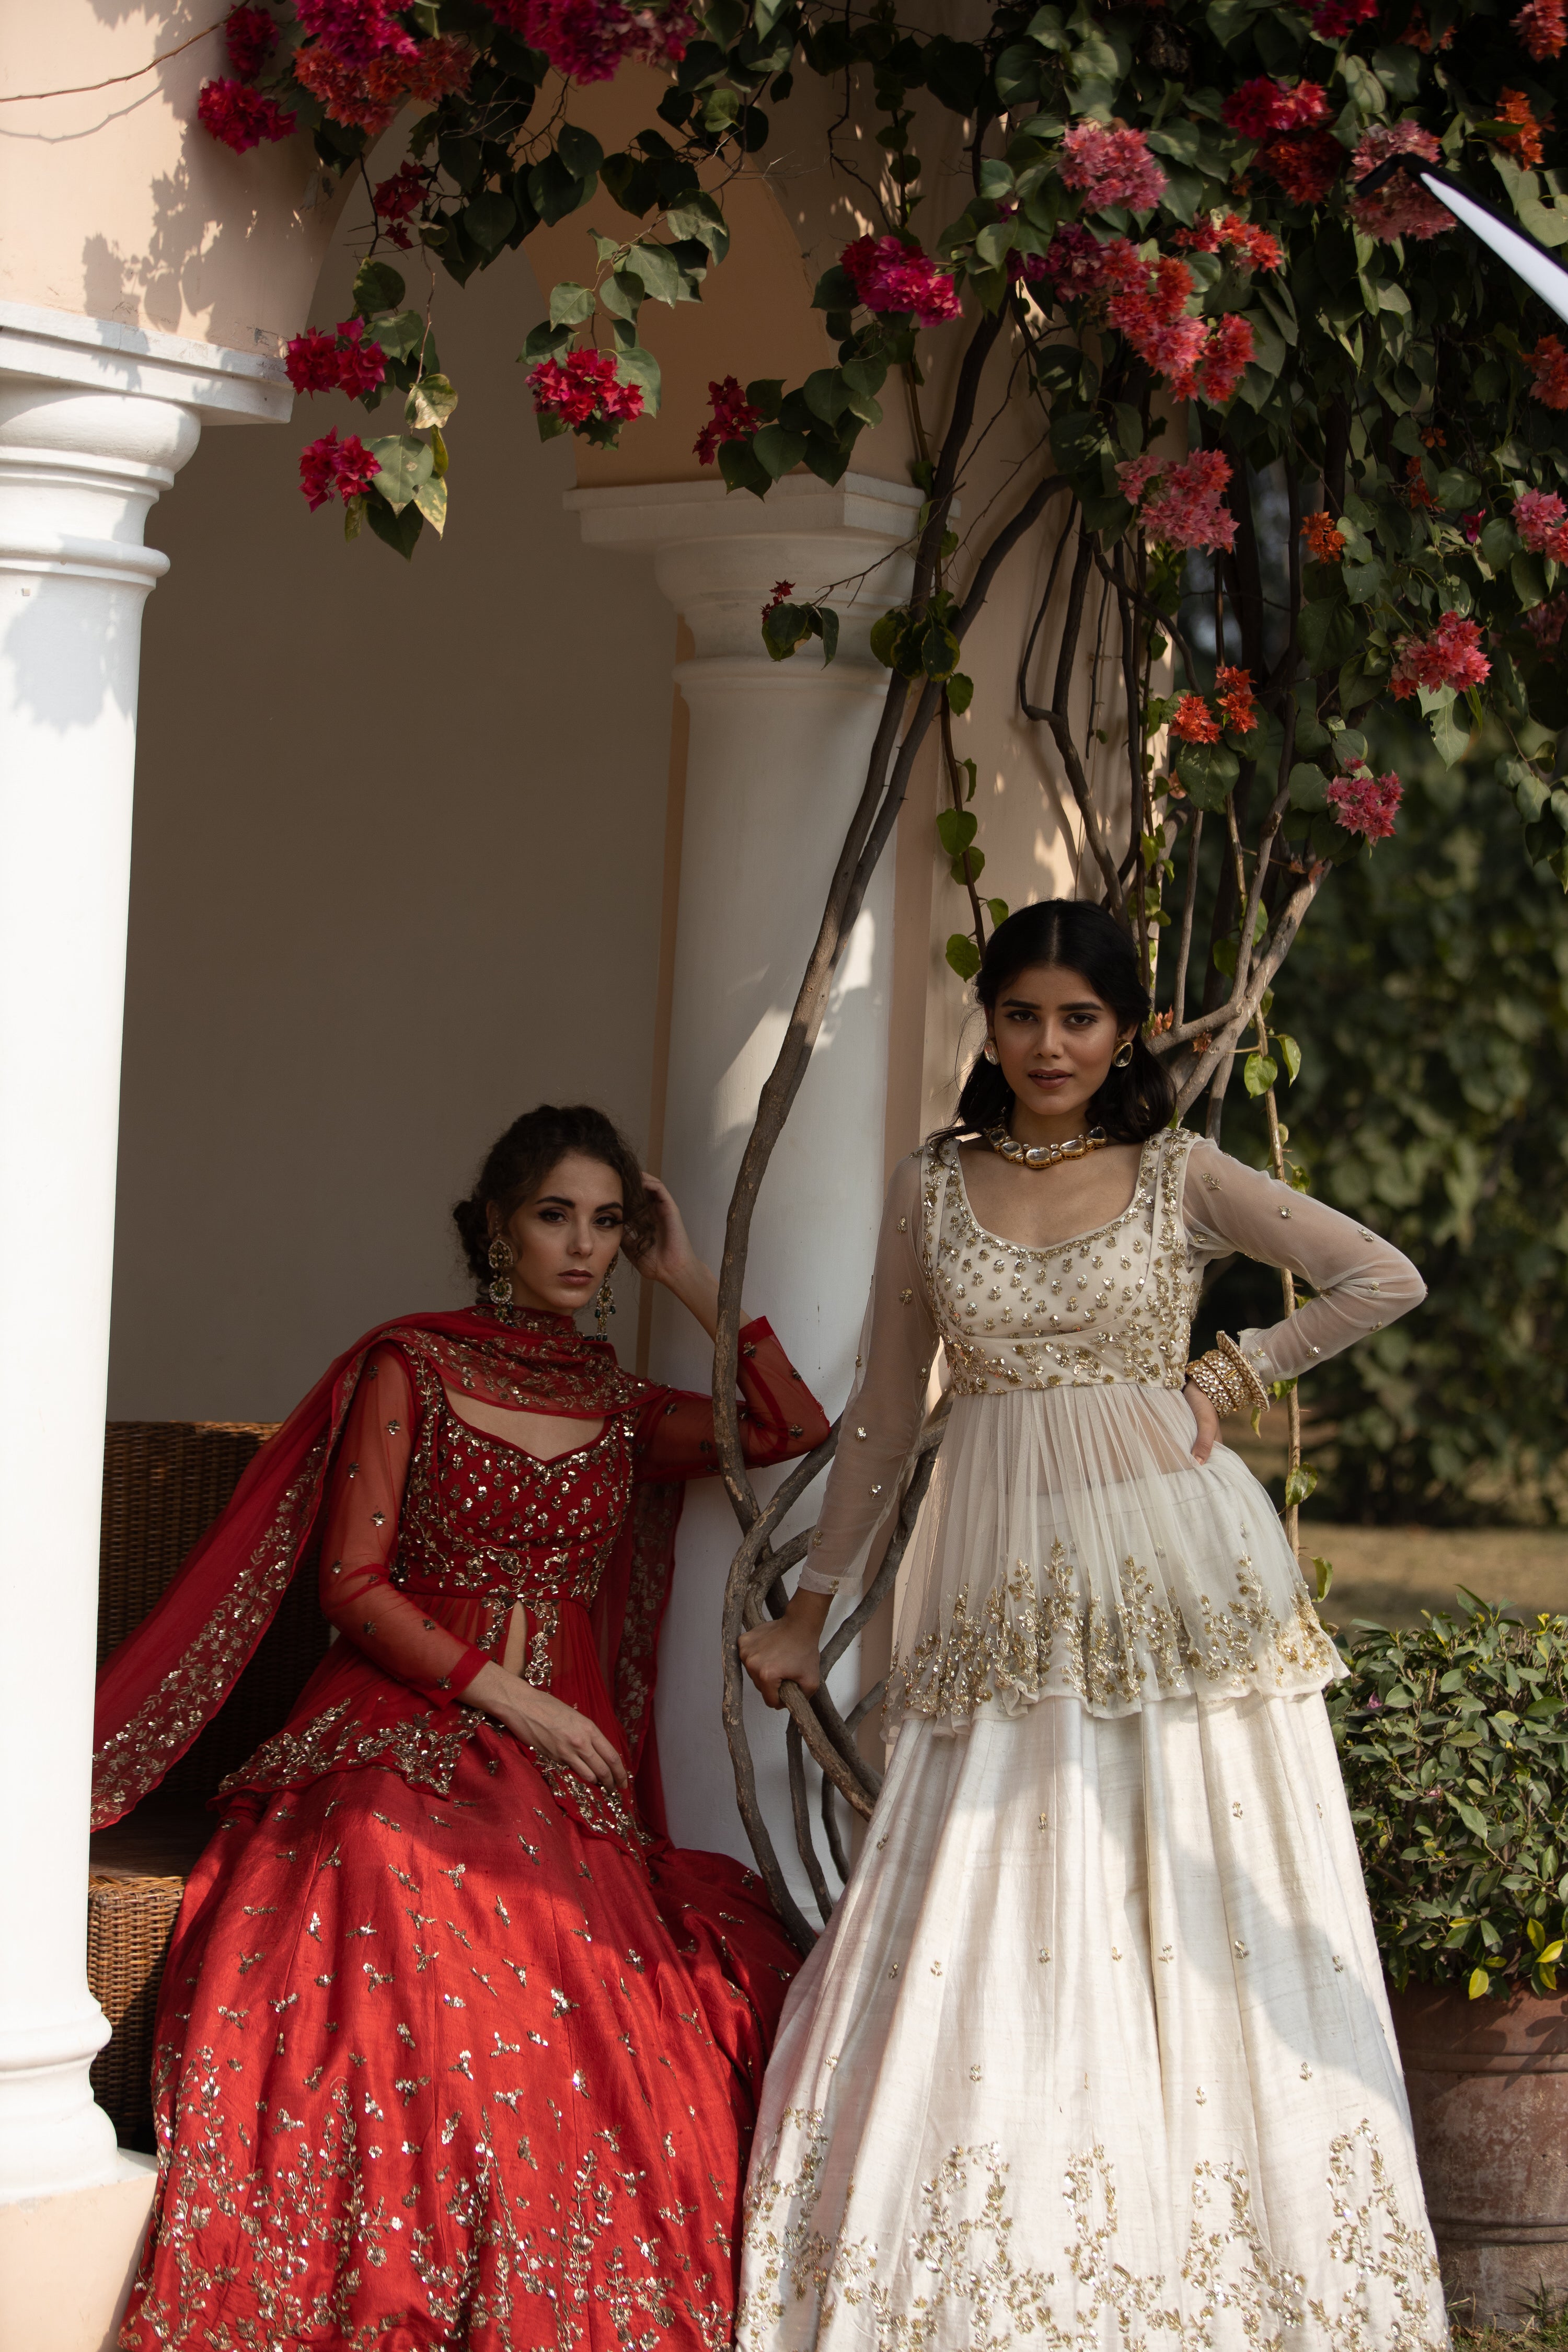 Buy Red and White Bridal Lehenga of Zari Work - Zardozi Fashion